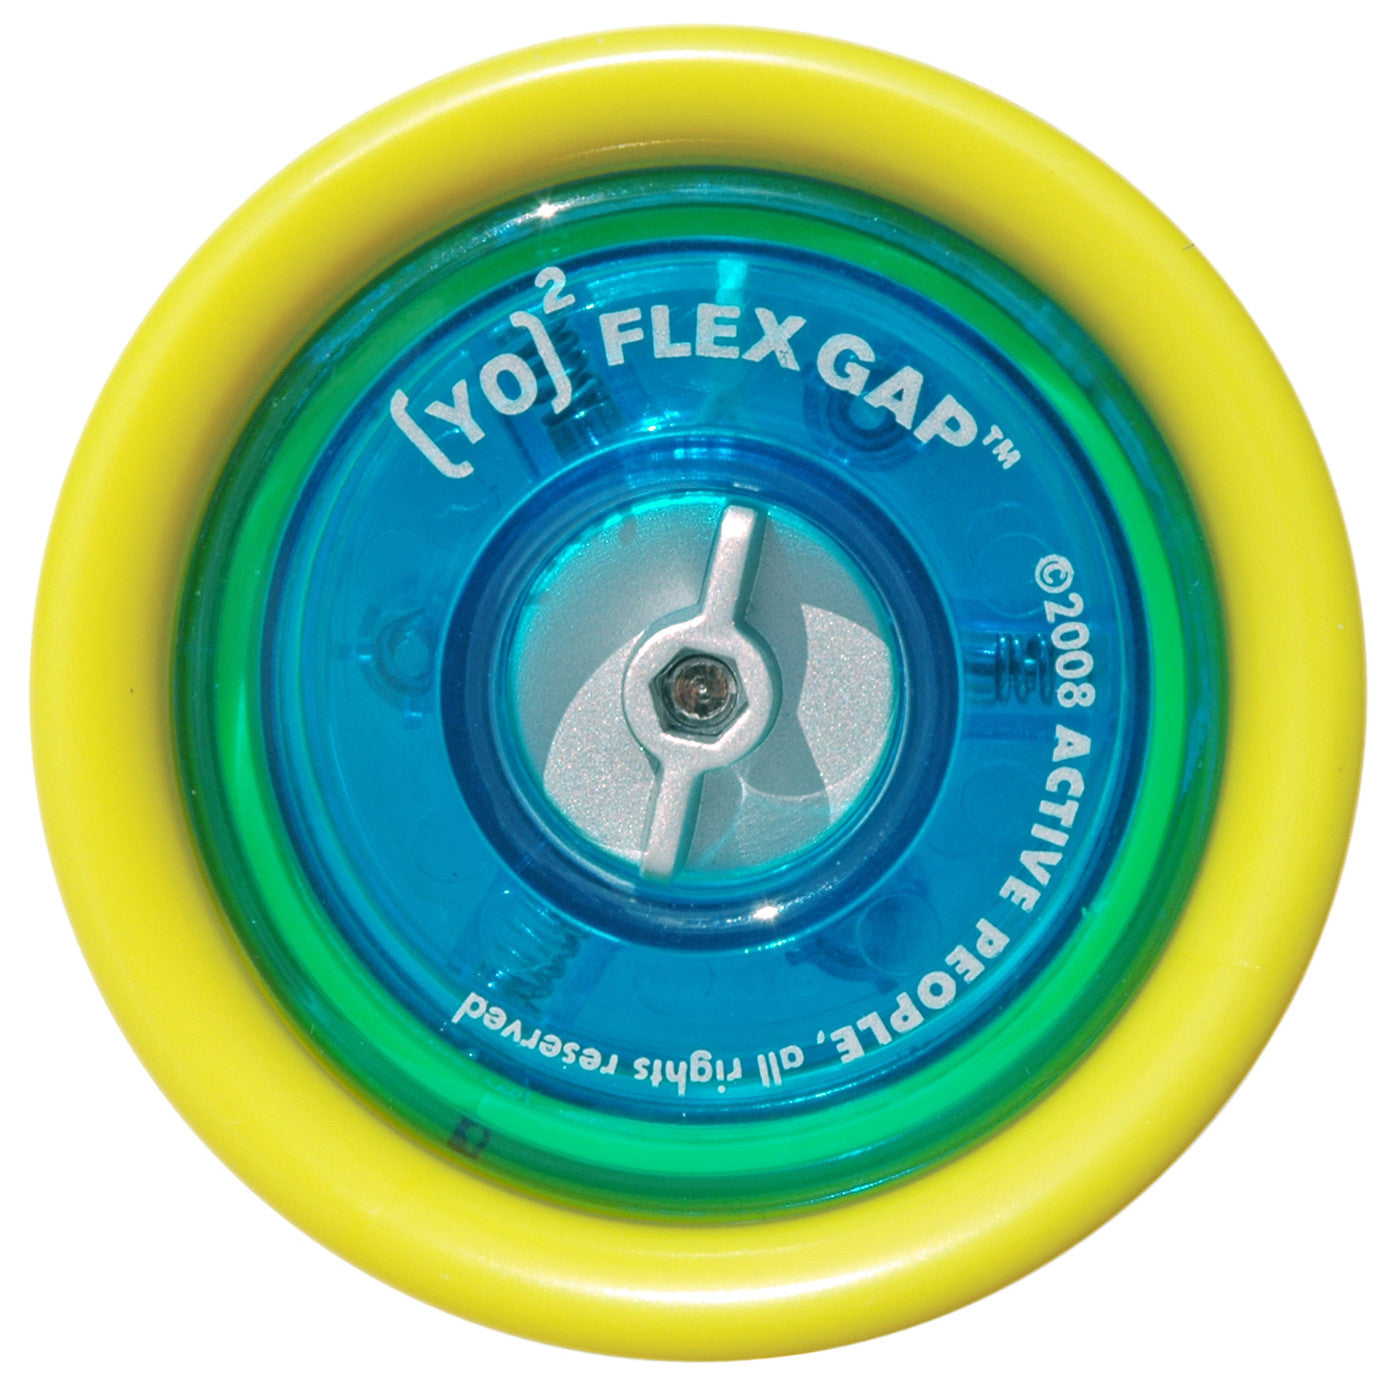 Regn maling Vask vinduer YO]2 Flex Gap Yo-yo | Yellow & Blue – Zsig